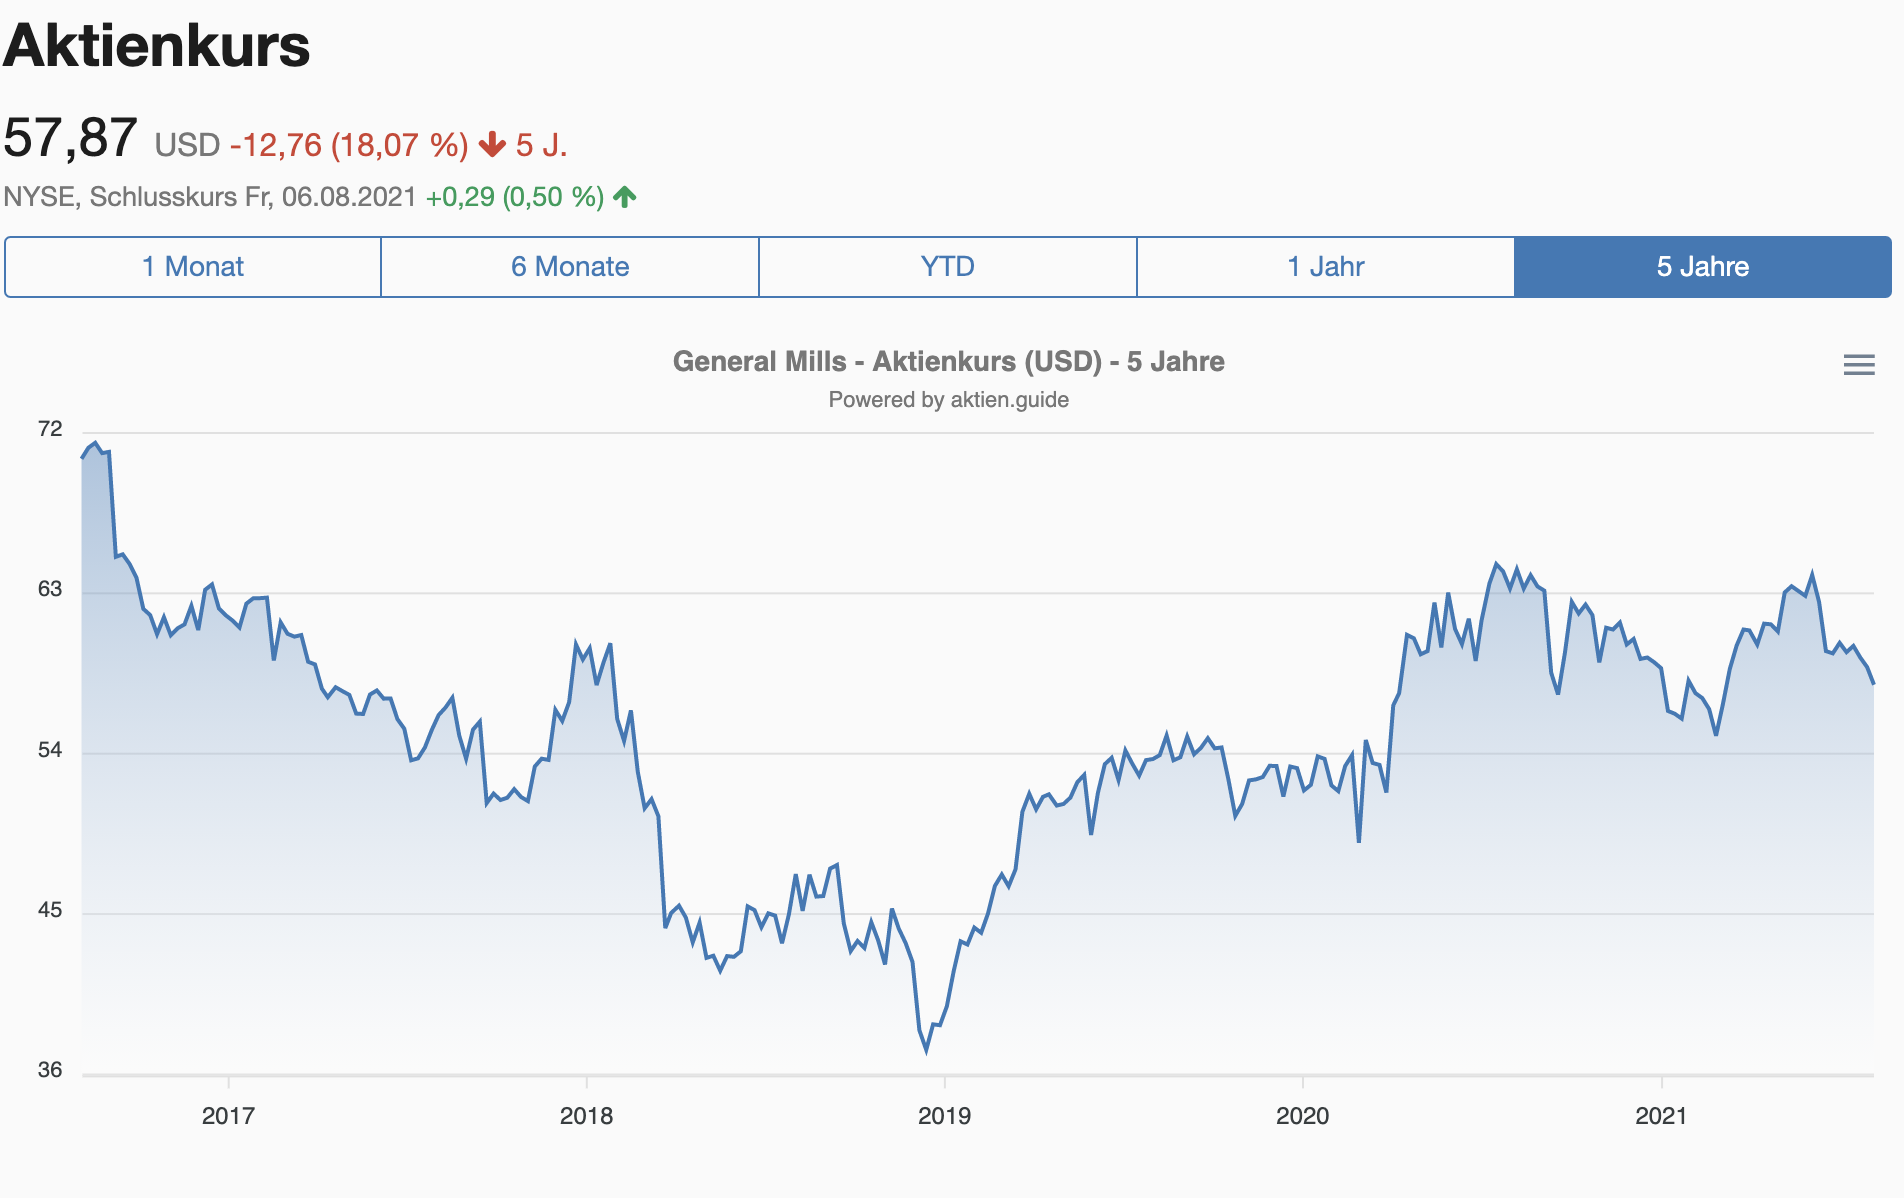 General Mills Aktie Aktienkursverlauf 5 Jahre